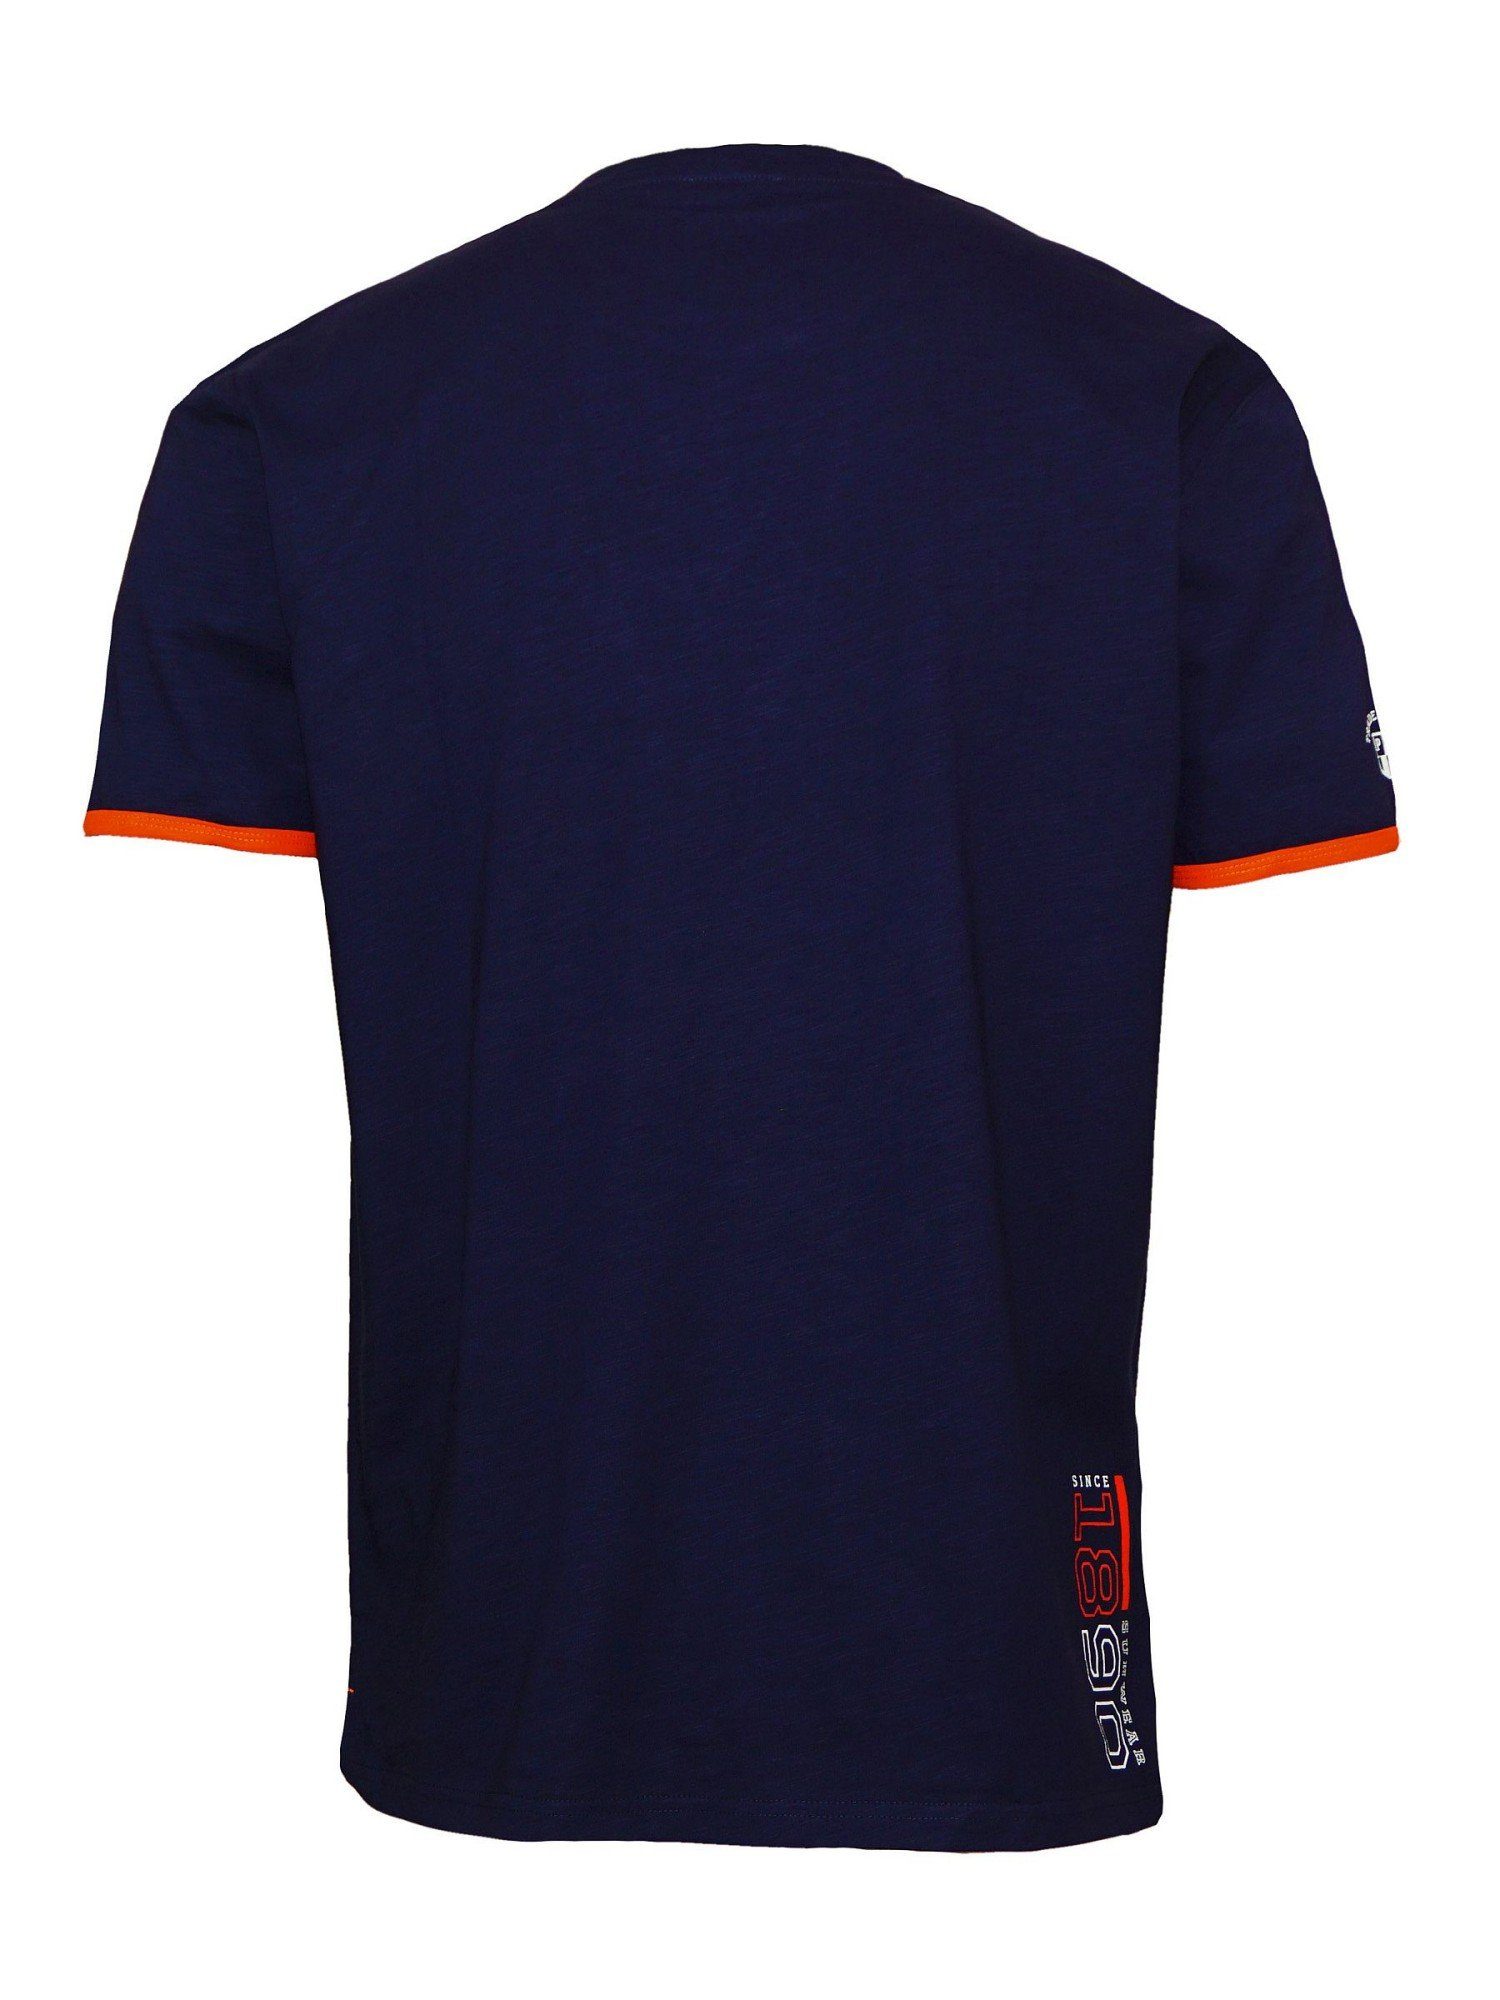 Emer U.S. Assn T-Shirt Polo dunkelblau Shirt T-Shirt